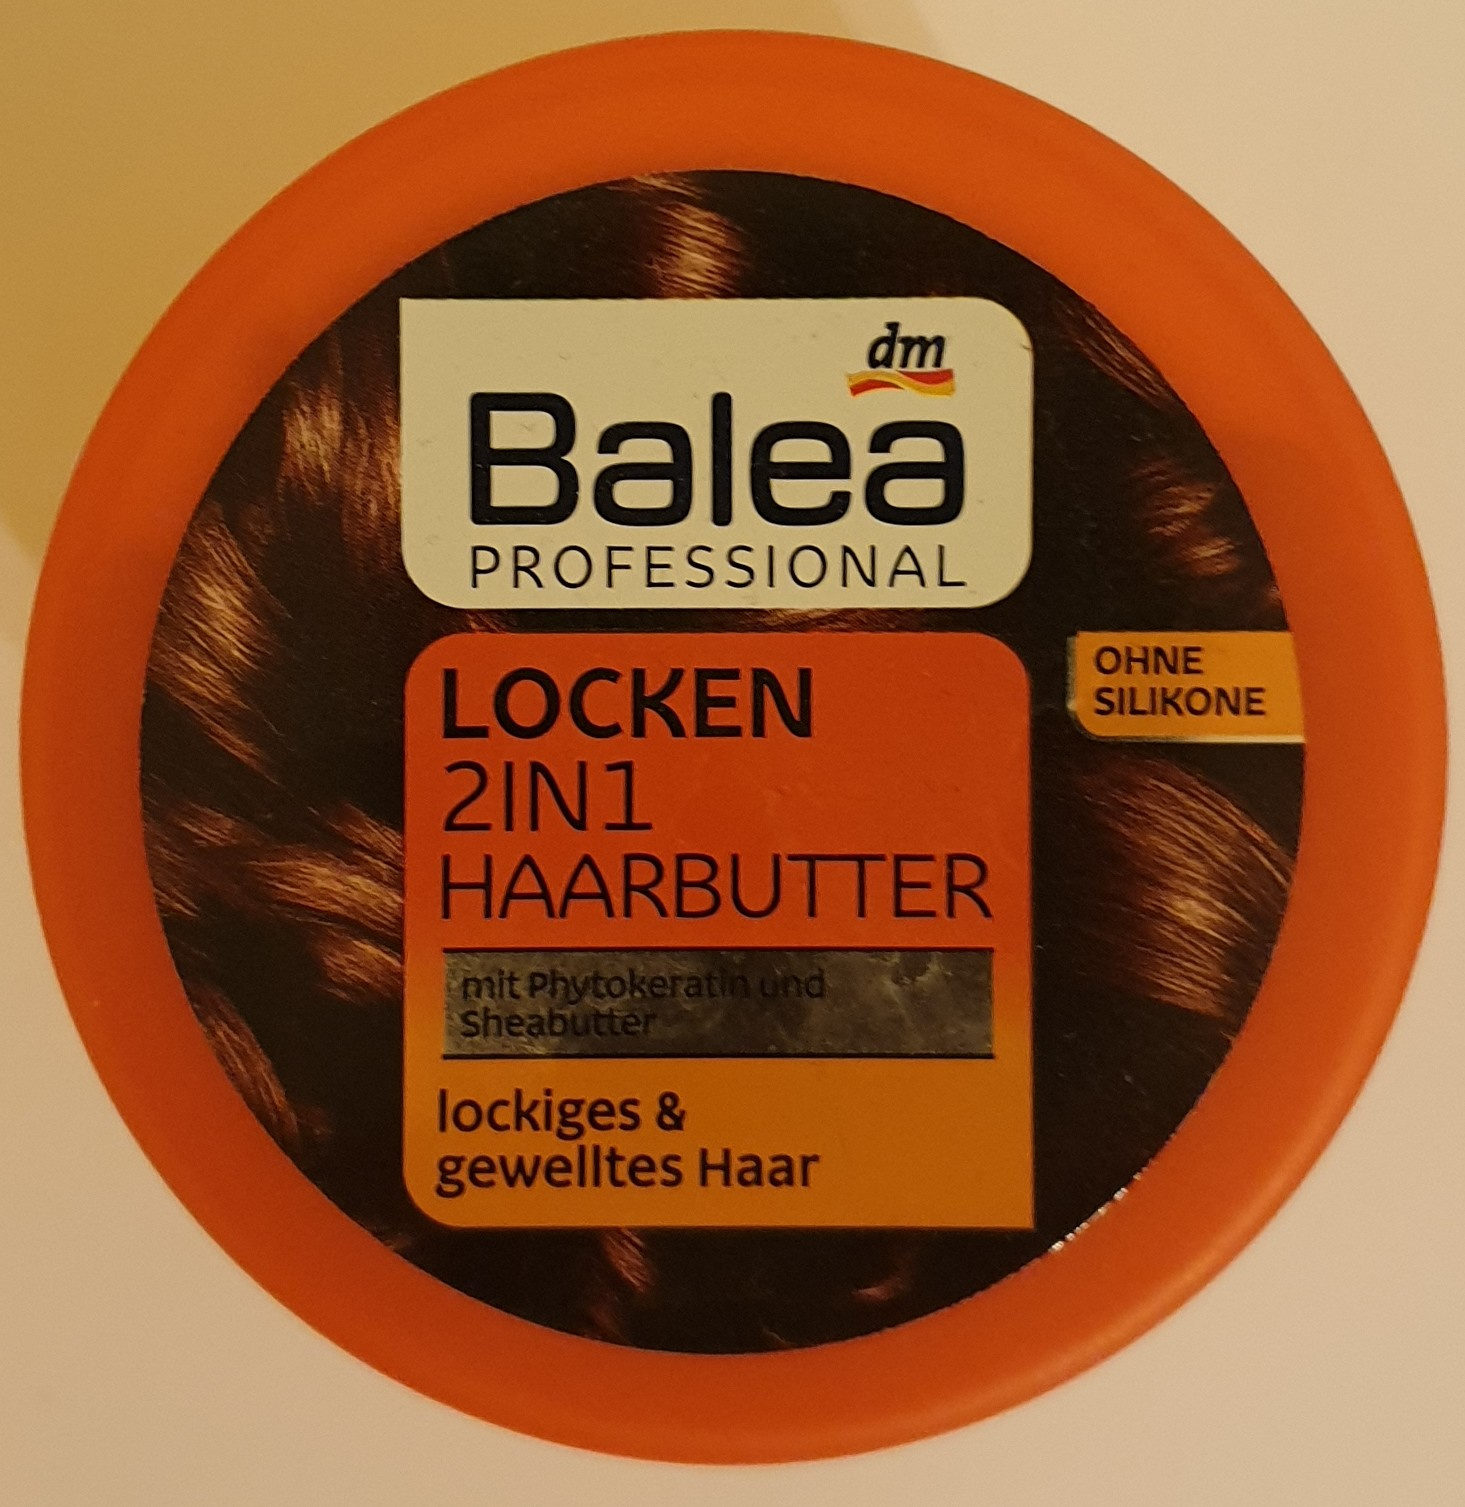 Locken 2in1 Haarbutter - Produit - de